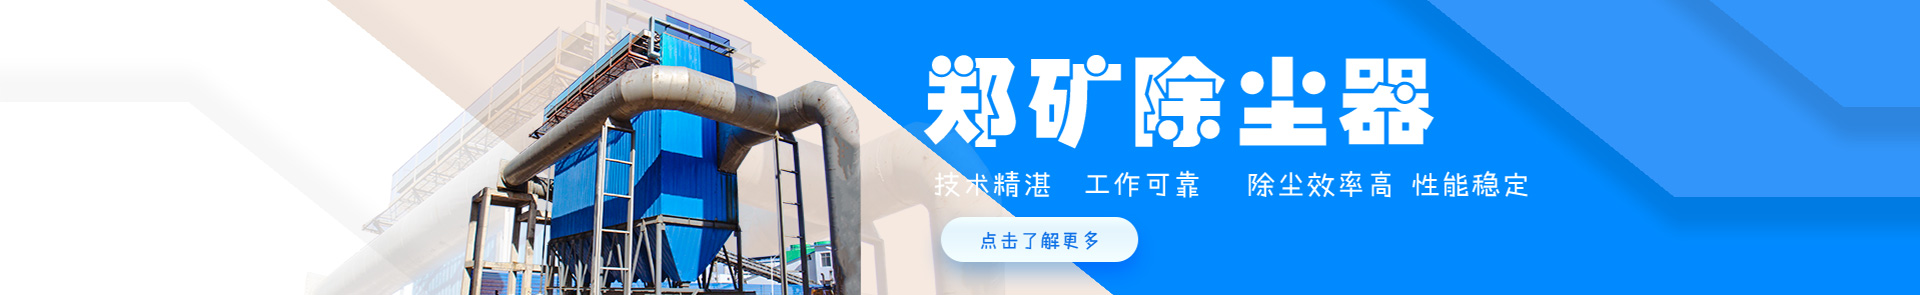 米乐游戏下载:热烈祝贺“徐州三原公司”荣获国家级科技型中小企业称谓